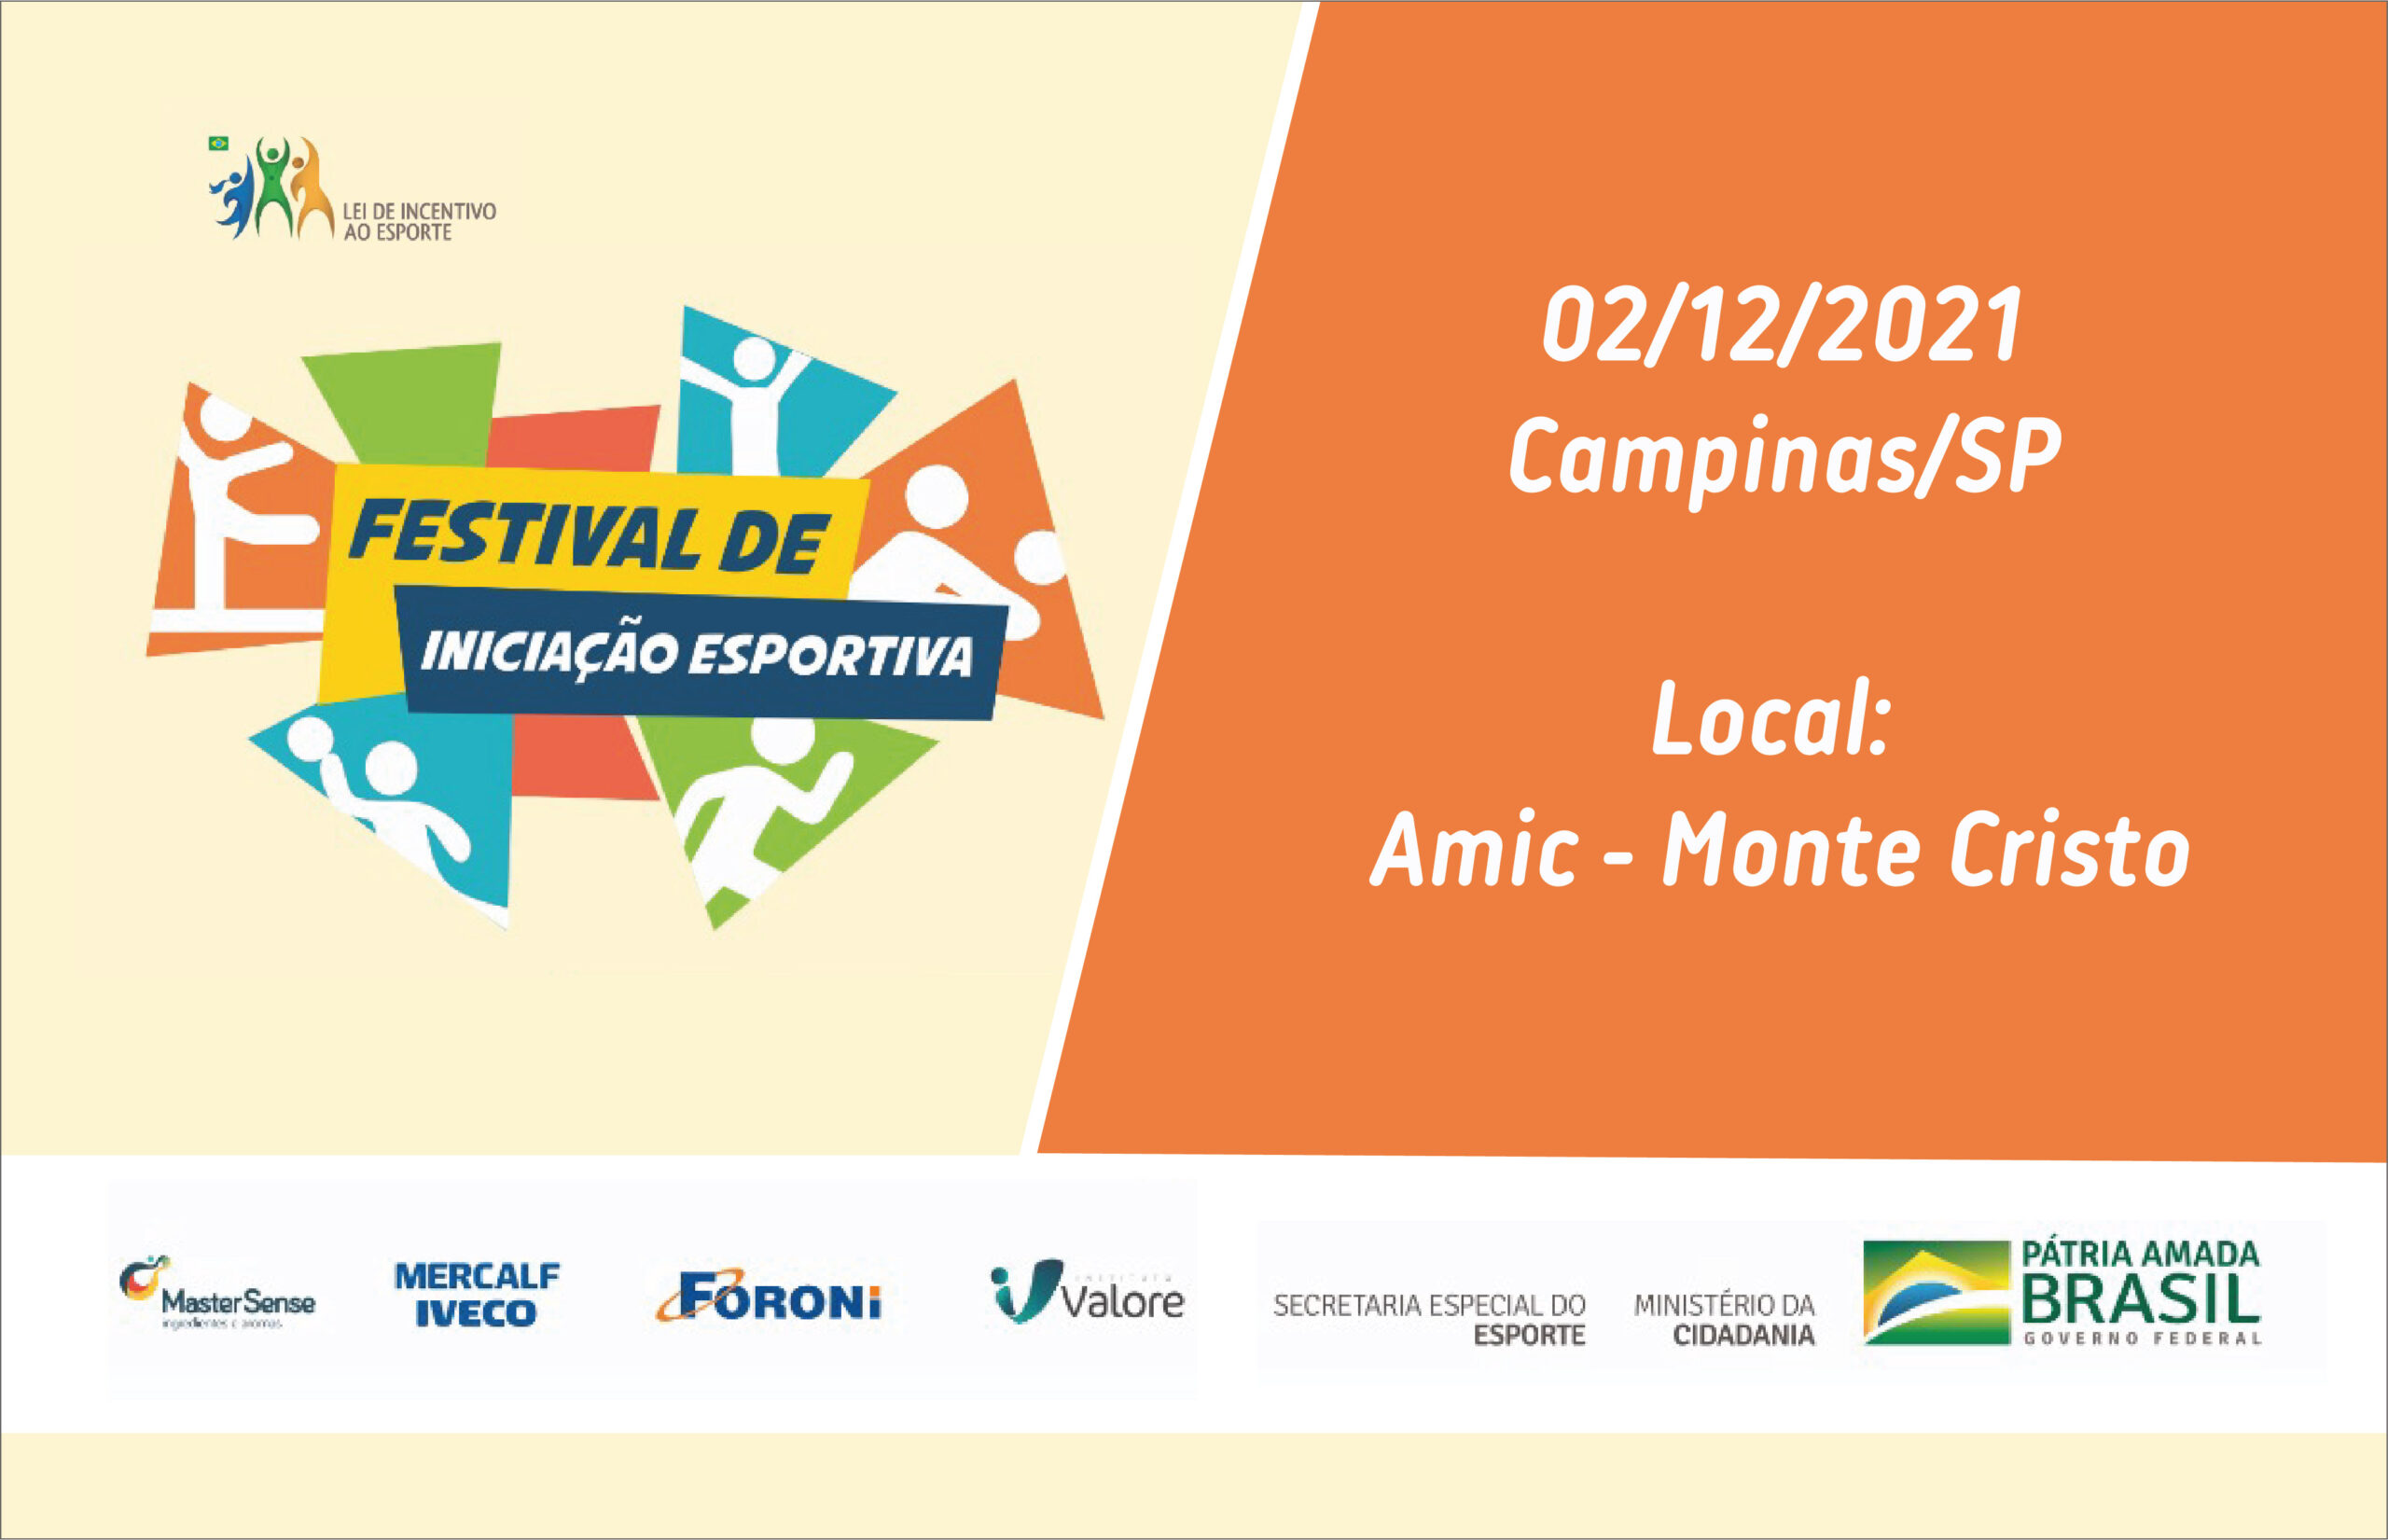 Com incentivo da MasterSense, Mercalf e Foroni, Campinas/SP receberá o Festival de Iniciação Esportiva